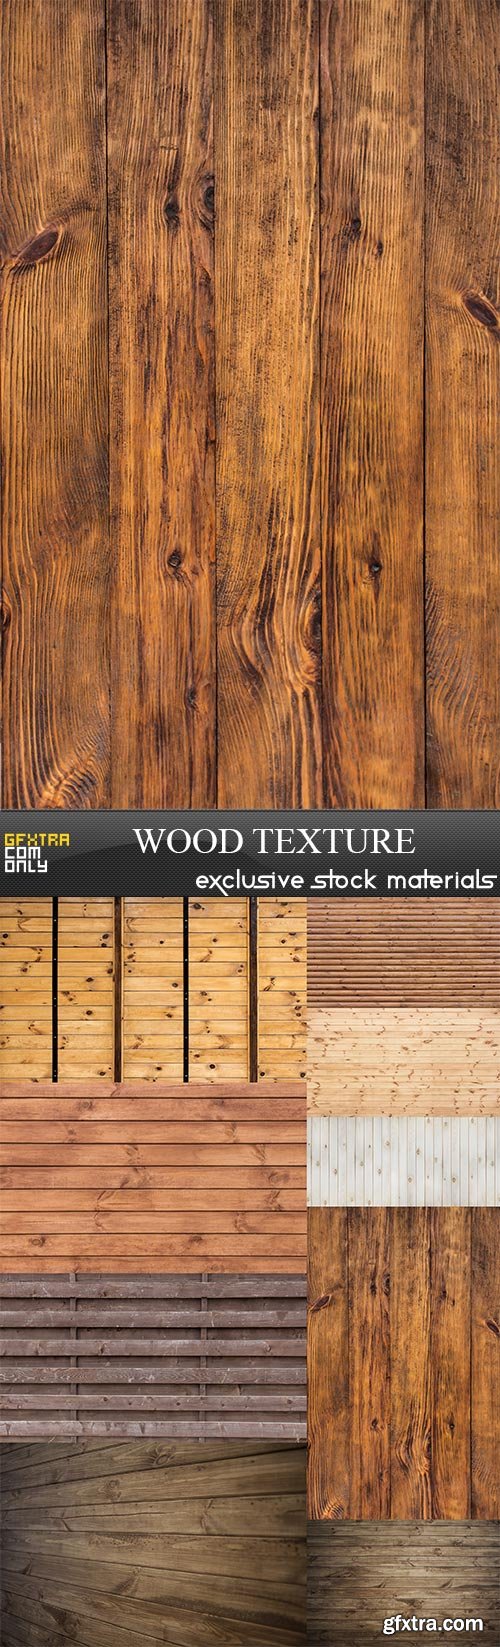 Wood Textures 9xJPG